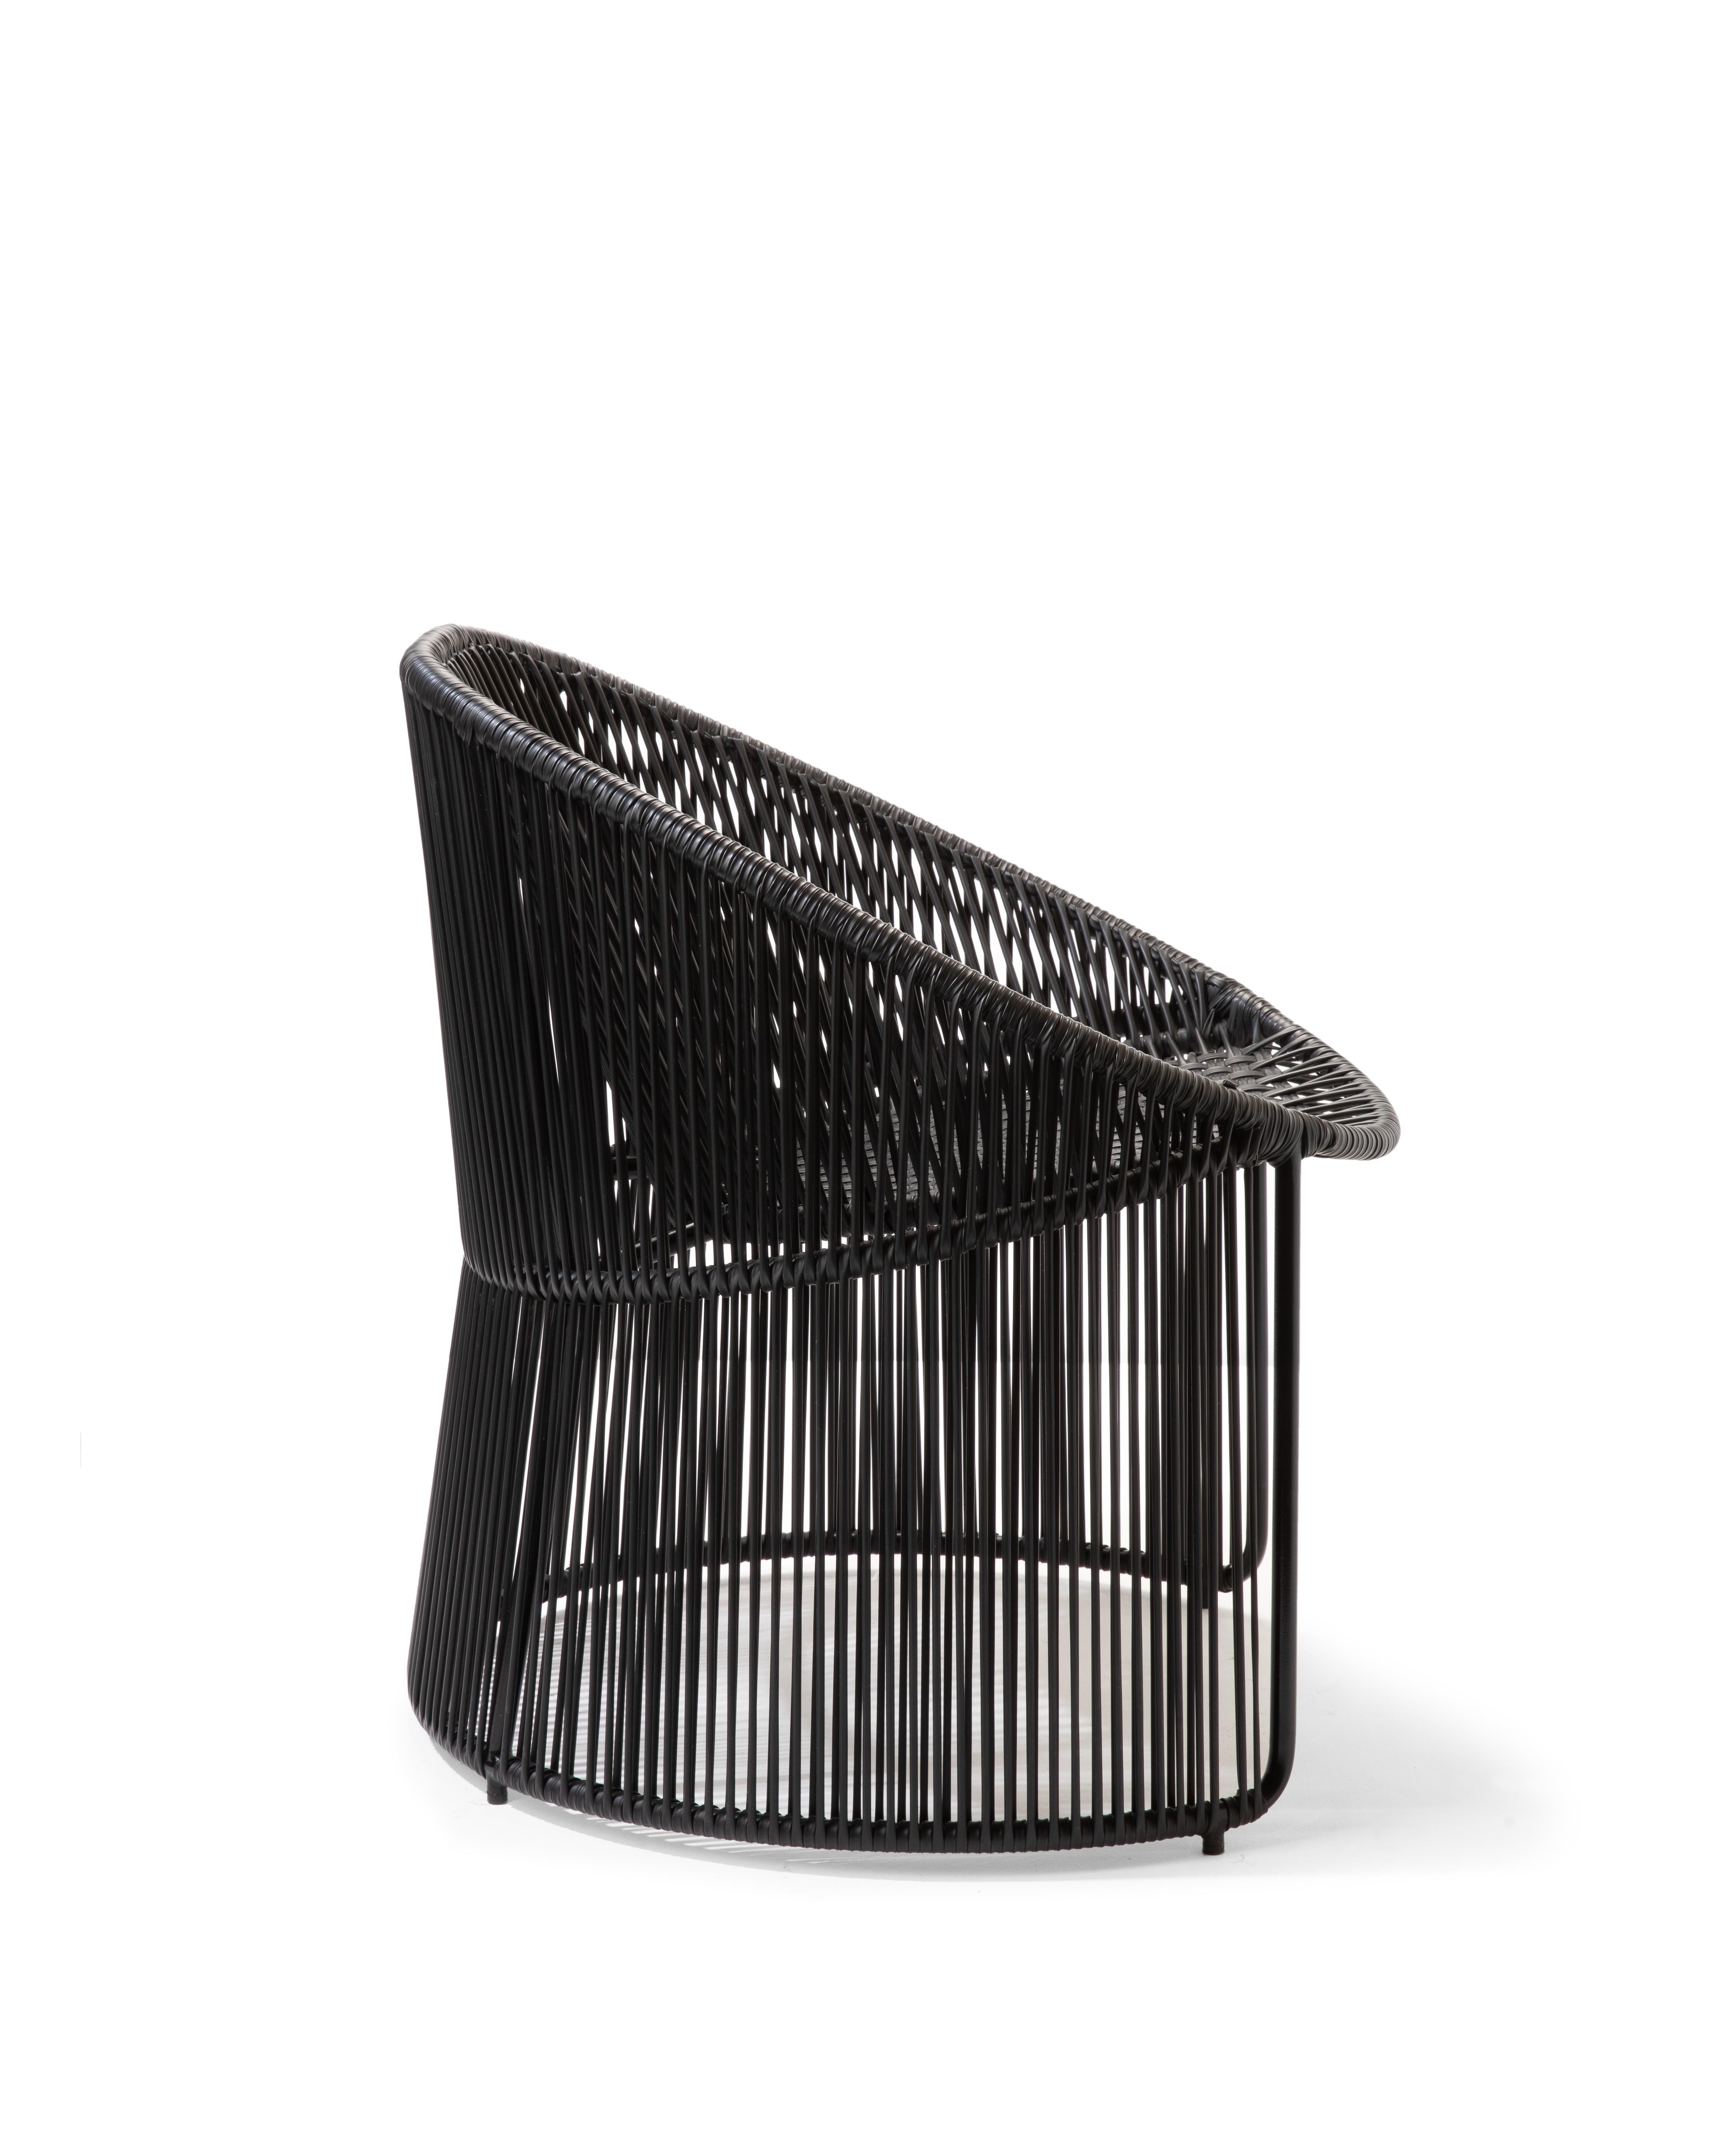 German Set of 4 Black Cartagenas Lounge Chair by Sebastian Herkner For Sale